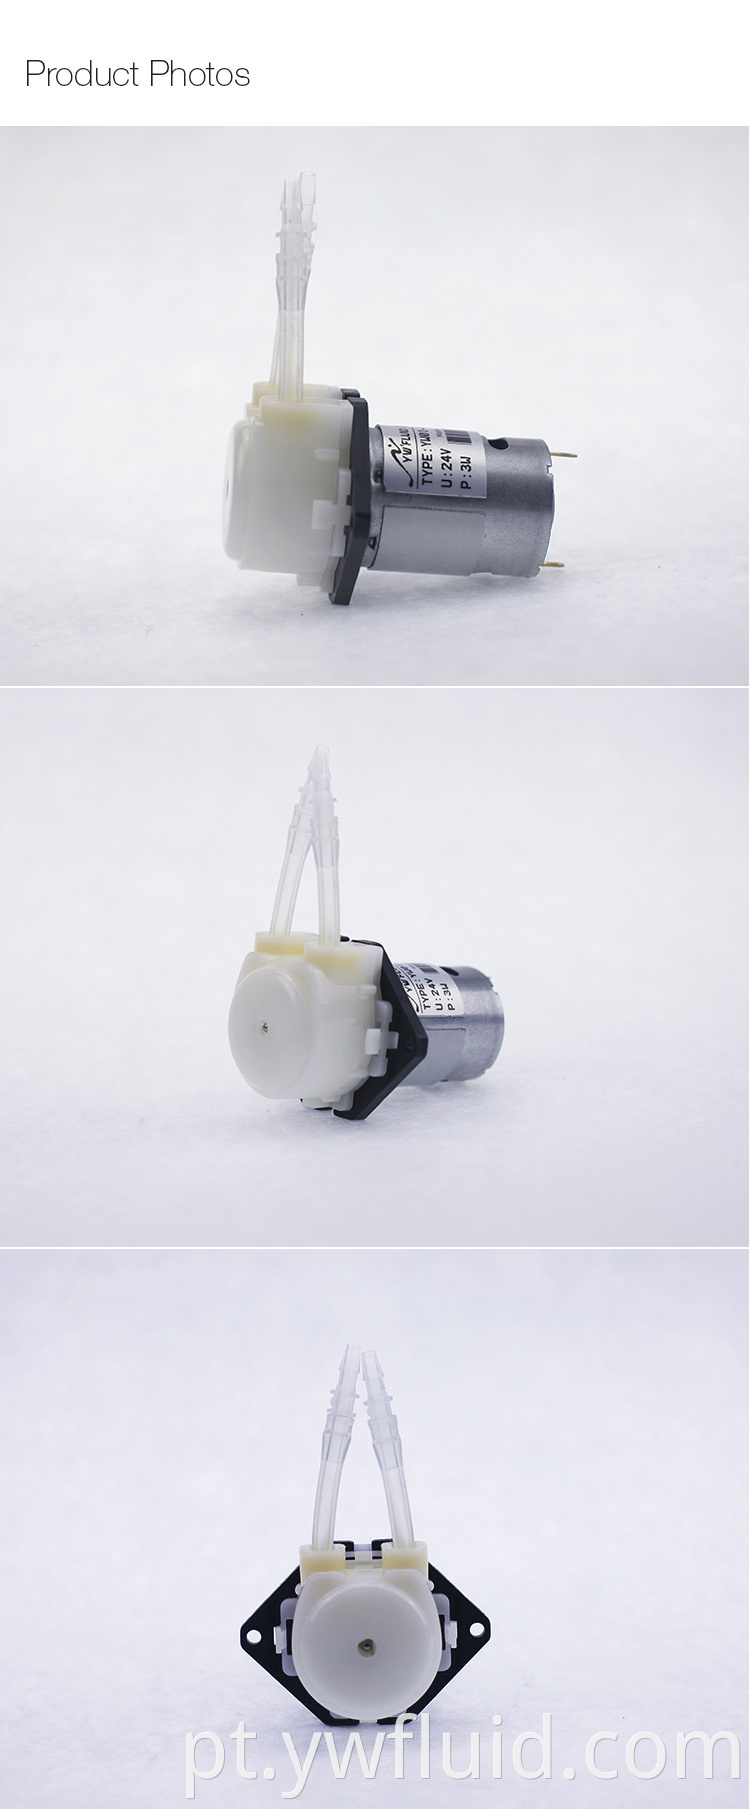 Micro bomba de água de escorvamento automático YWfluid com grande fluxo 130ml / min resistente à corrosão